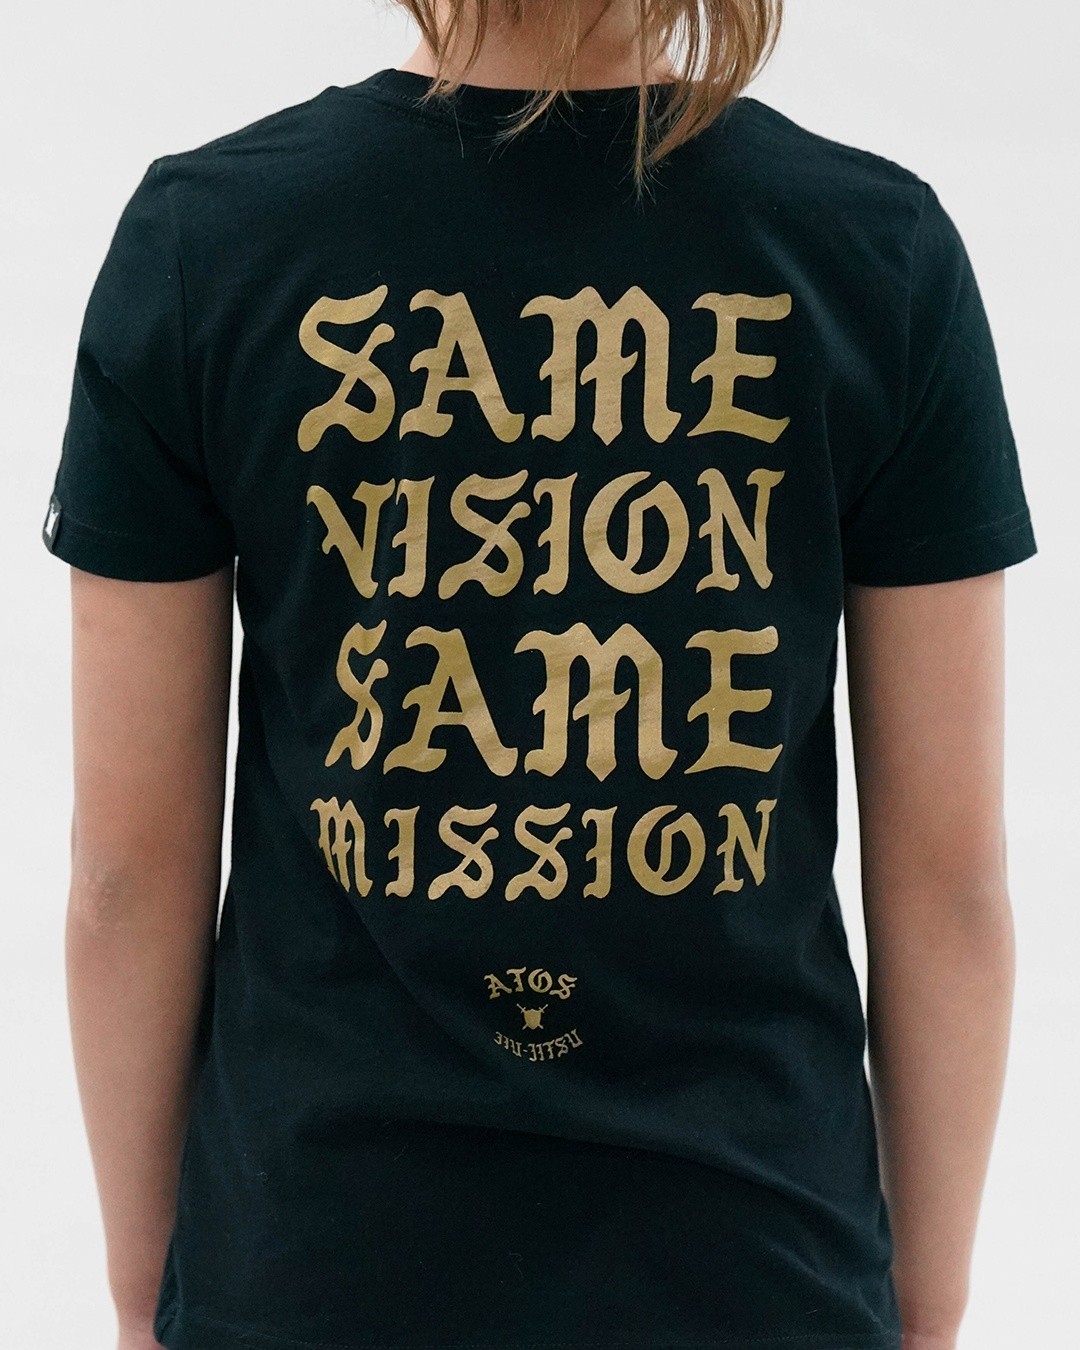 Same Vision Same Mission T-Shirt (Youth)